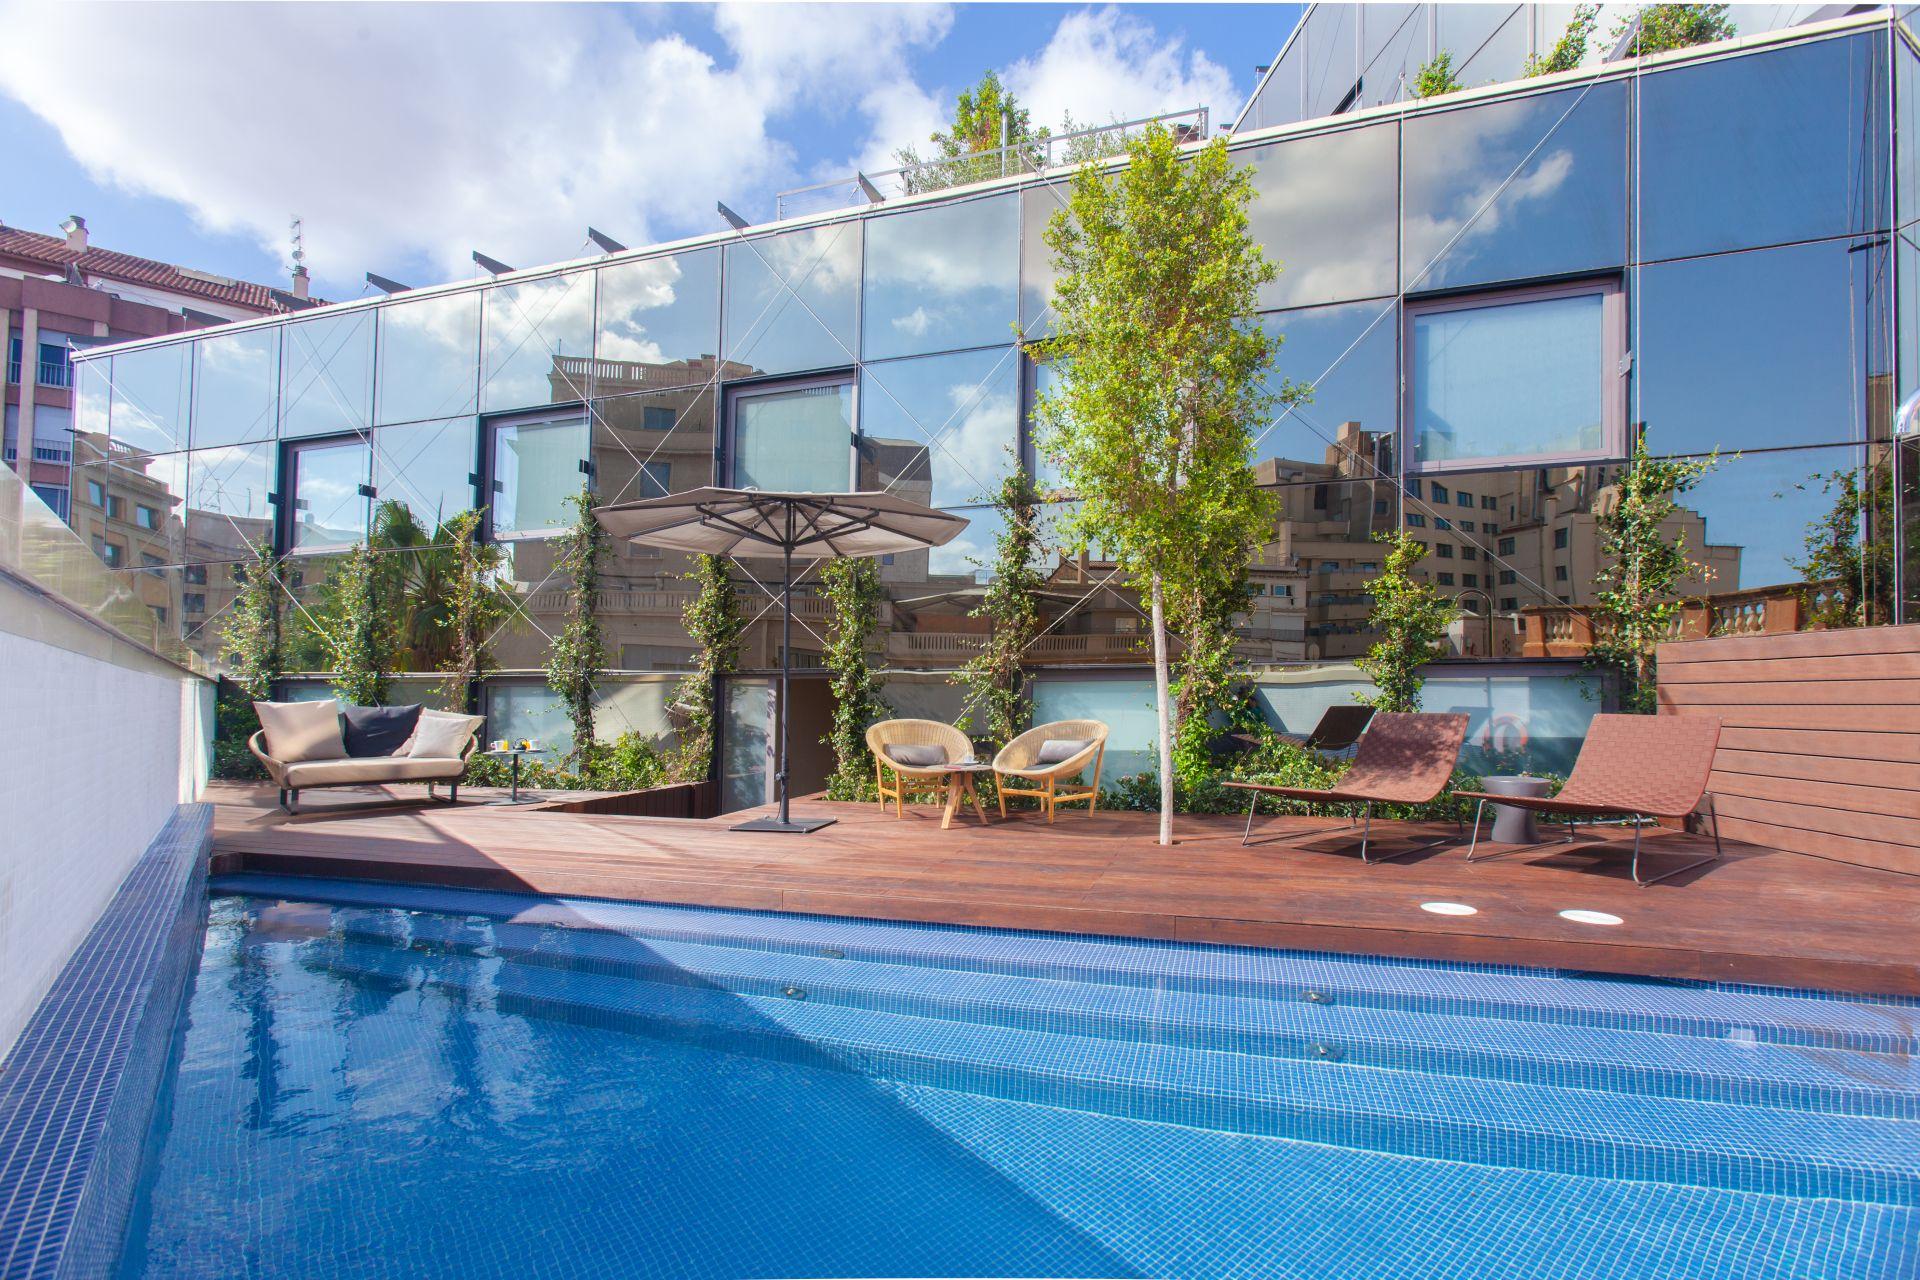 Reihenhaus Garten Inspirierend Od Barcelona Hotel Deals S & Reviews